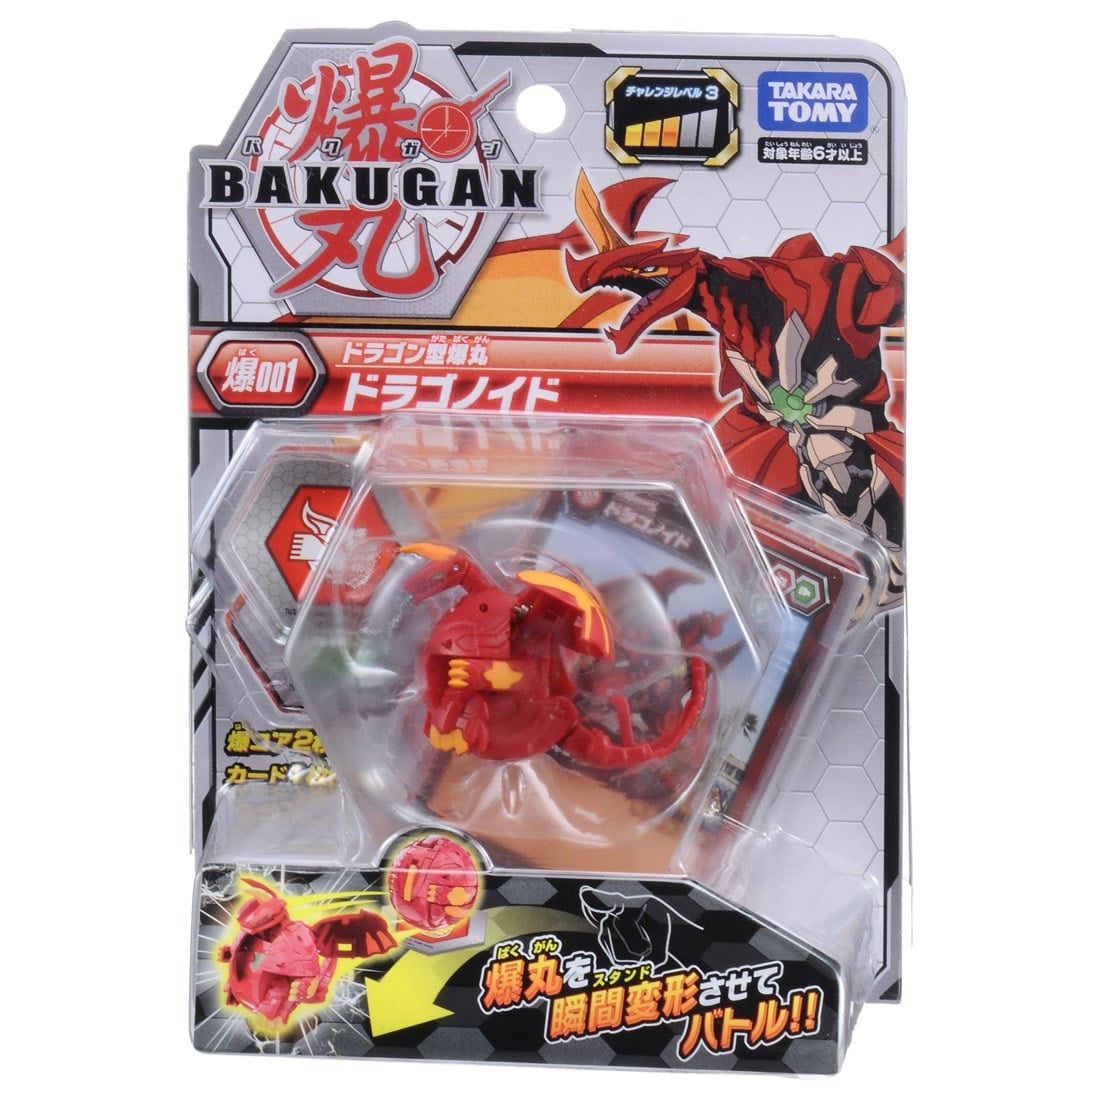 Takara Tomy Bakugan Baku001 Dragonoid Red